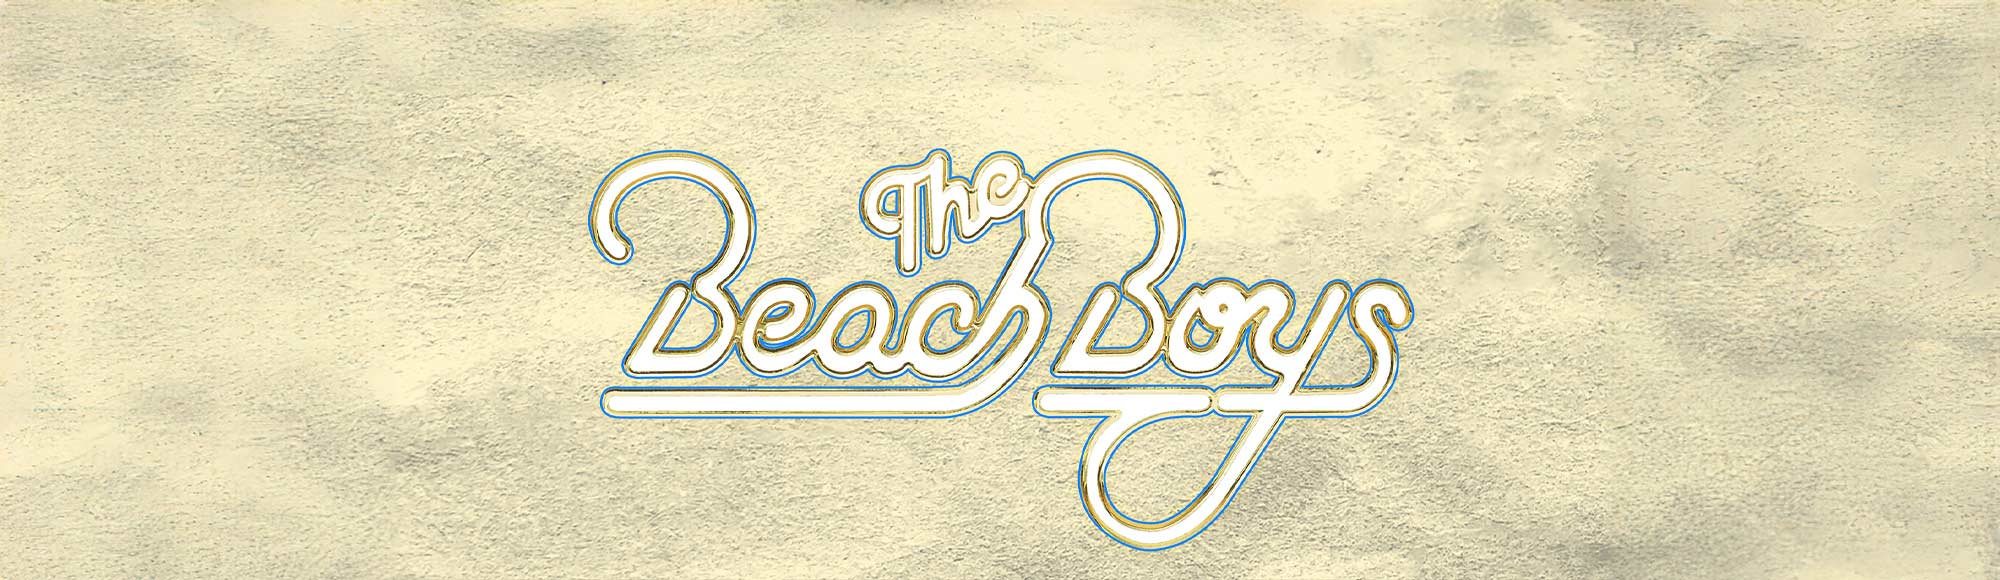 The Beach Boys show